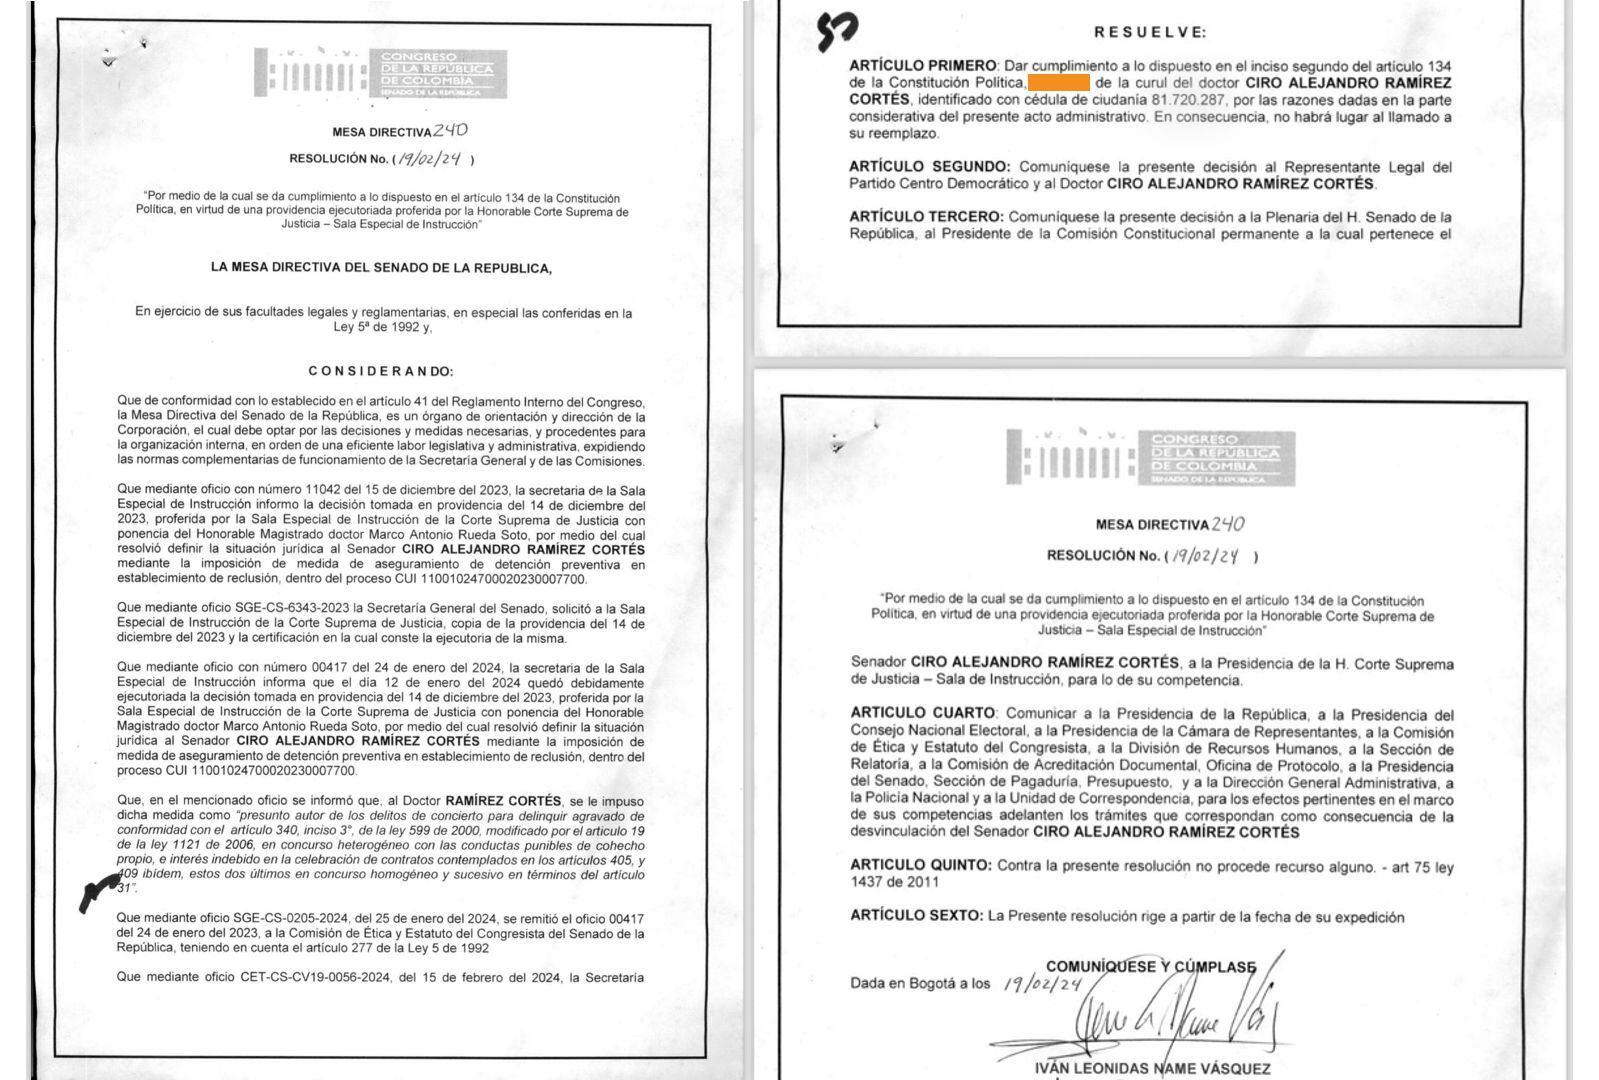 La resolución del 19 de febrero de 2024 decretó la silla vacía del exsenador Ciro Ramírez, por lo que el Centro Democrático pierde una curul en el Senado - crédito Senado de la República